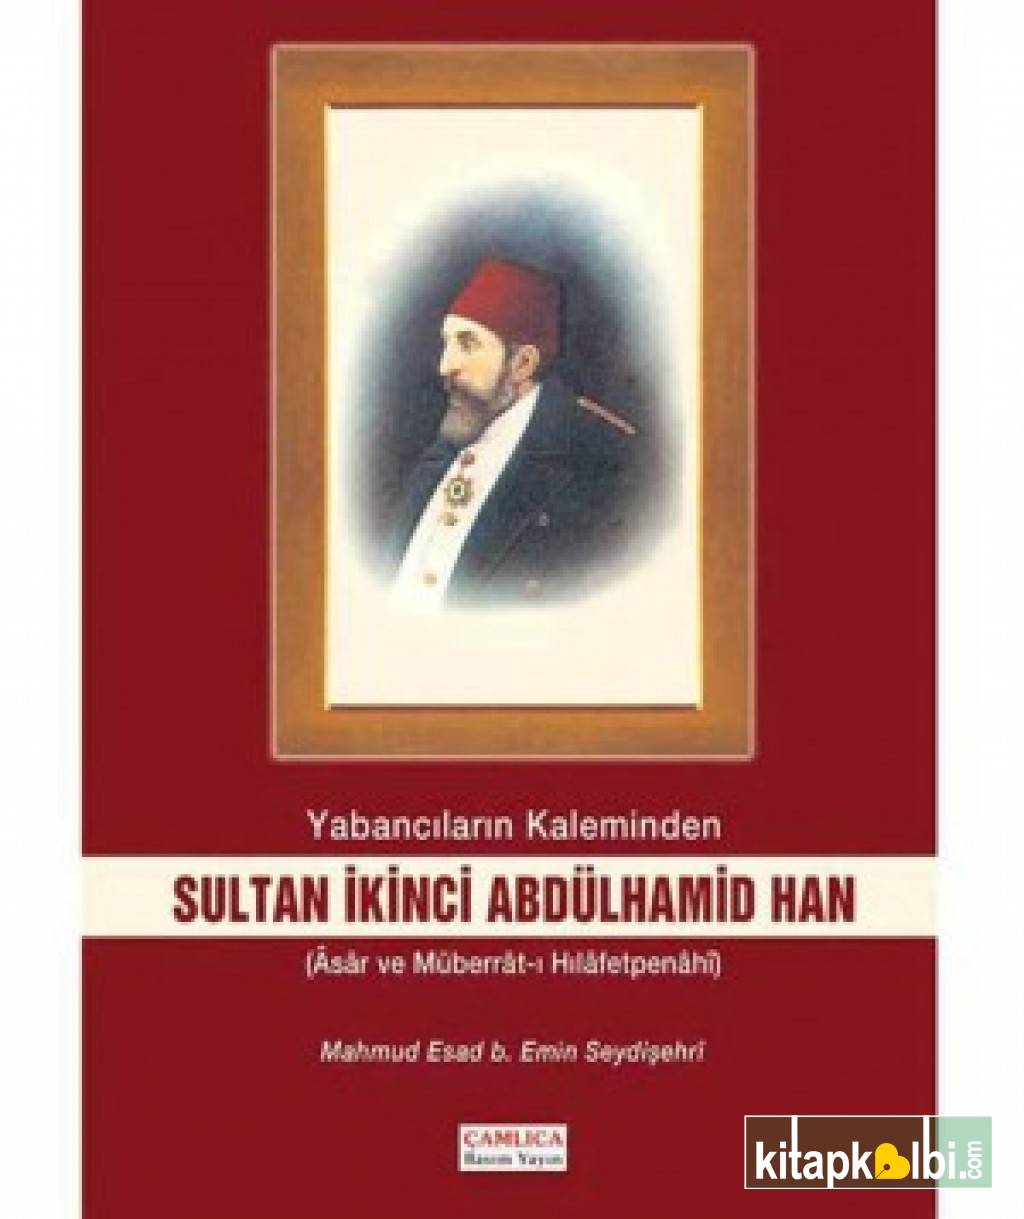 İkinci Abdülhamid Han (Yabancıların Kaleminden)